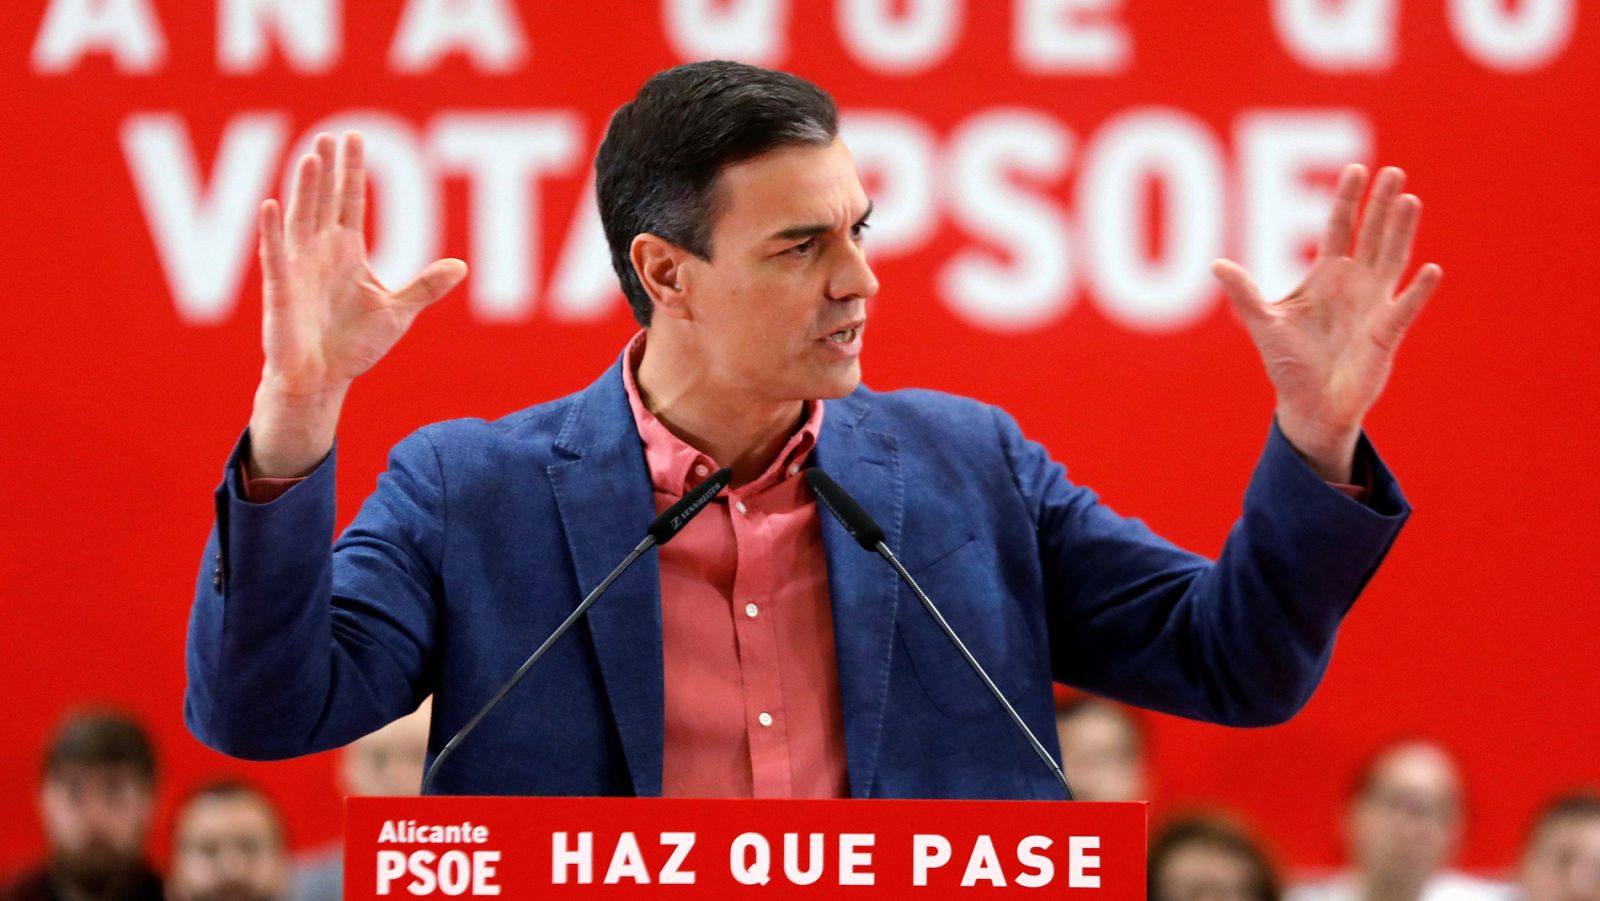 Acto electoral de Pedro Sánchez en Alicante